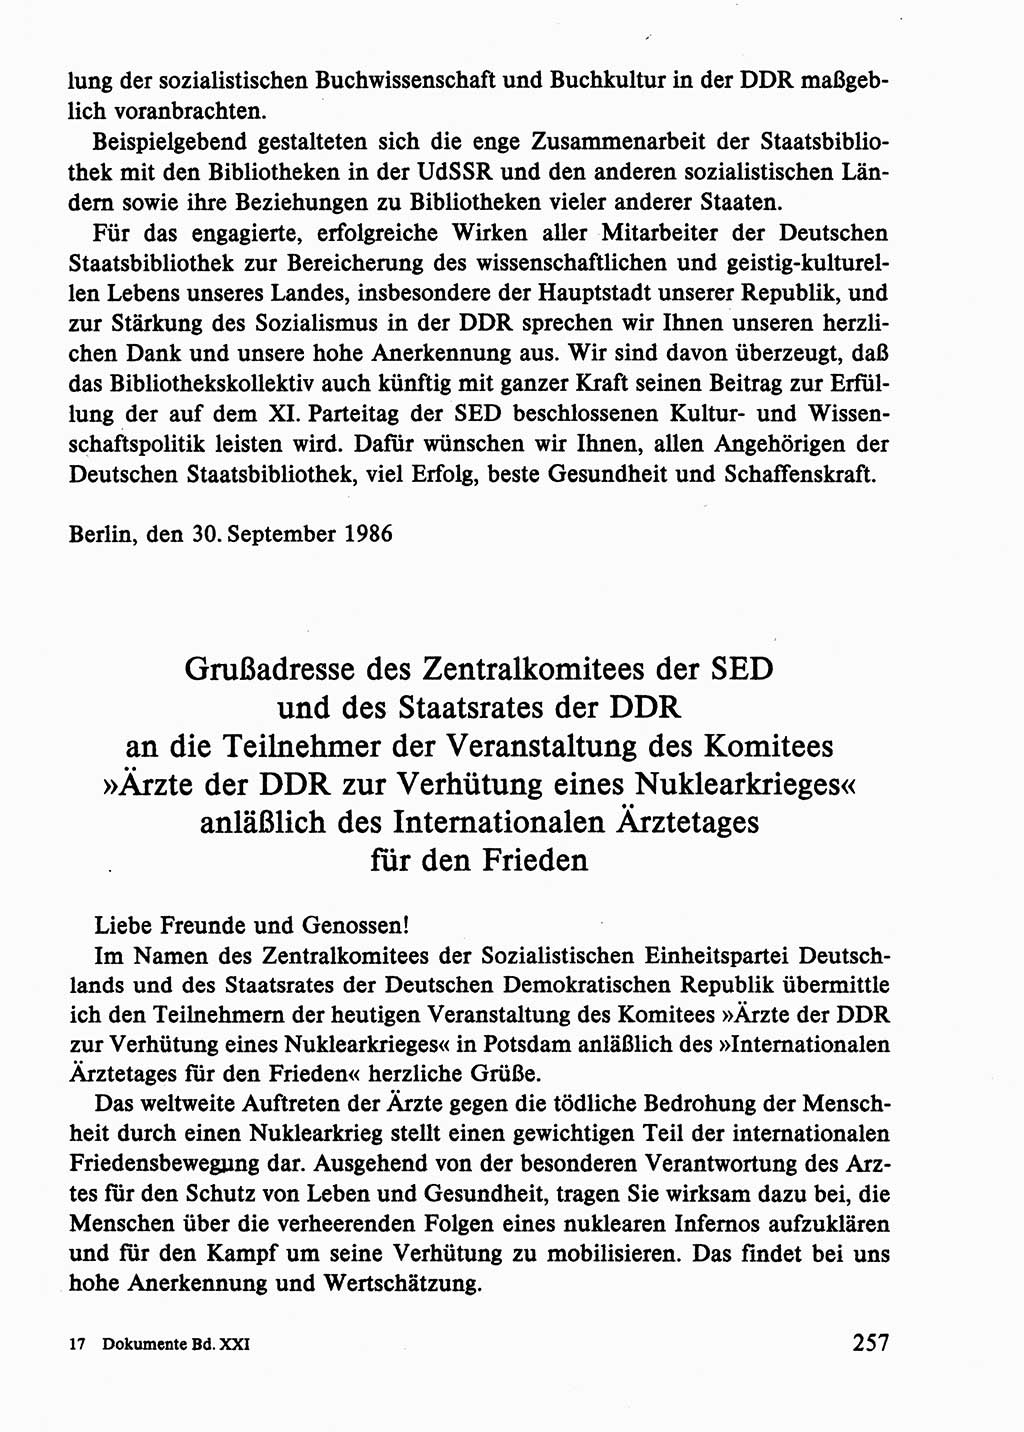 Dokumente der Sozialistischen Einheitspartei Deutschlands (SED) [Deutsche Demokratische Republik (DDR)] 1986-1987, Seite 257 (Dok. SED DDR 1986-1987, S. 257)